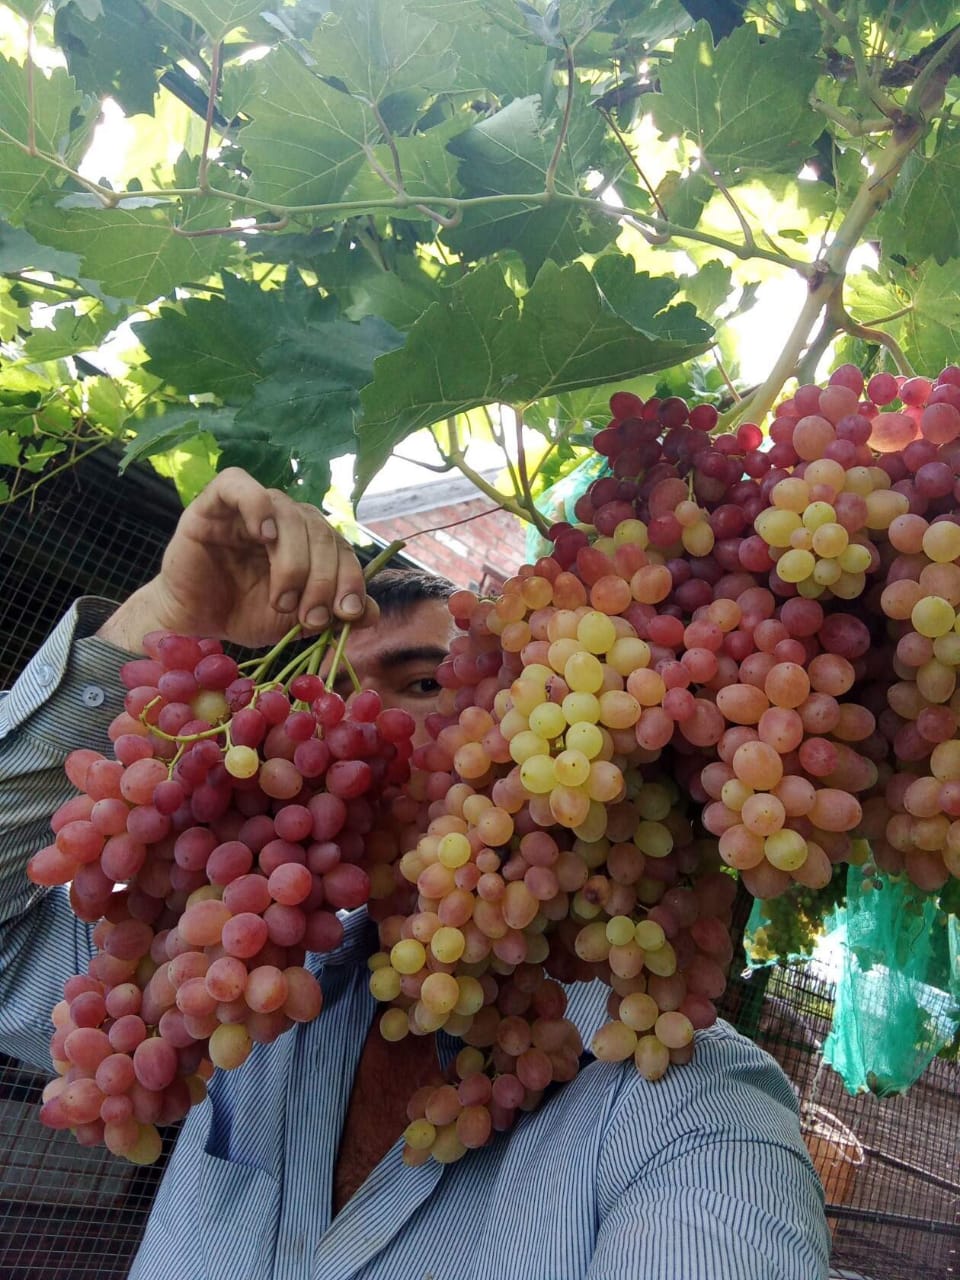 Астраханский виноградарь рассказал, как вырастить хороший урожай